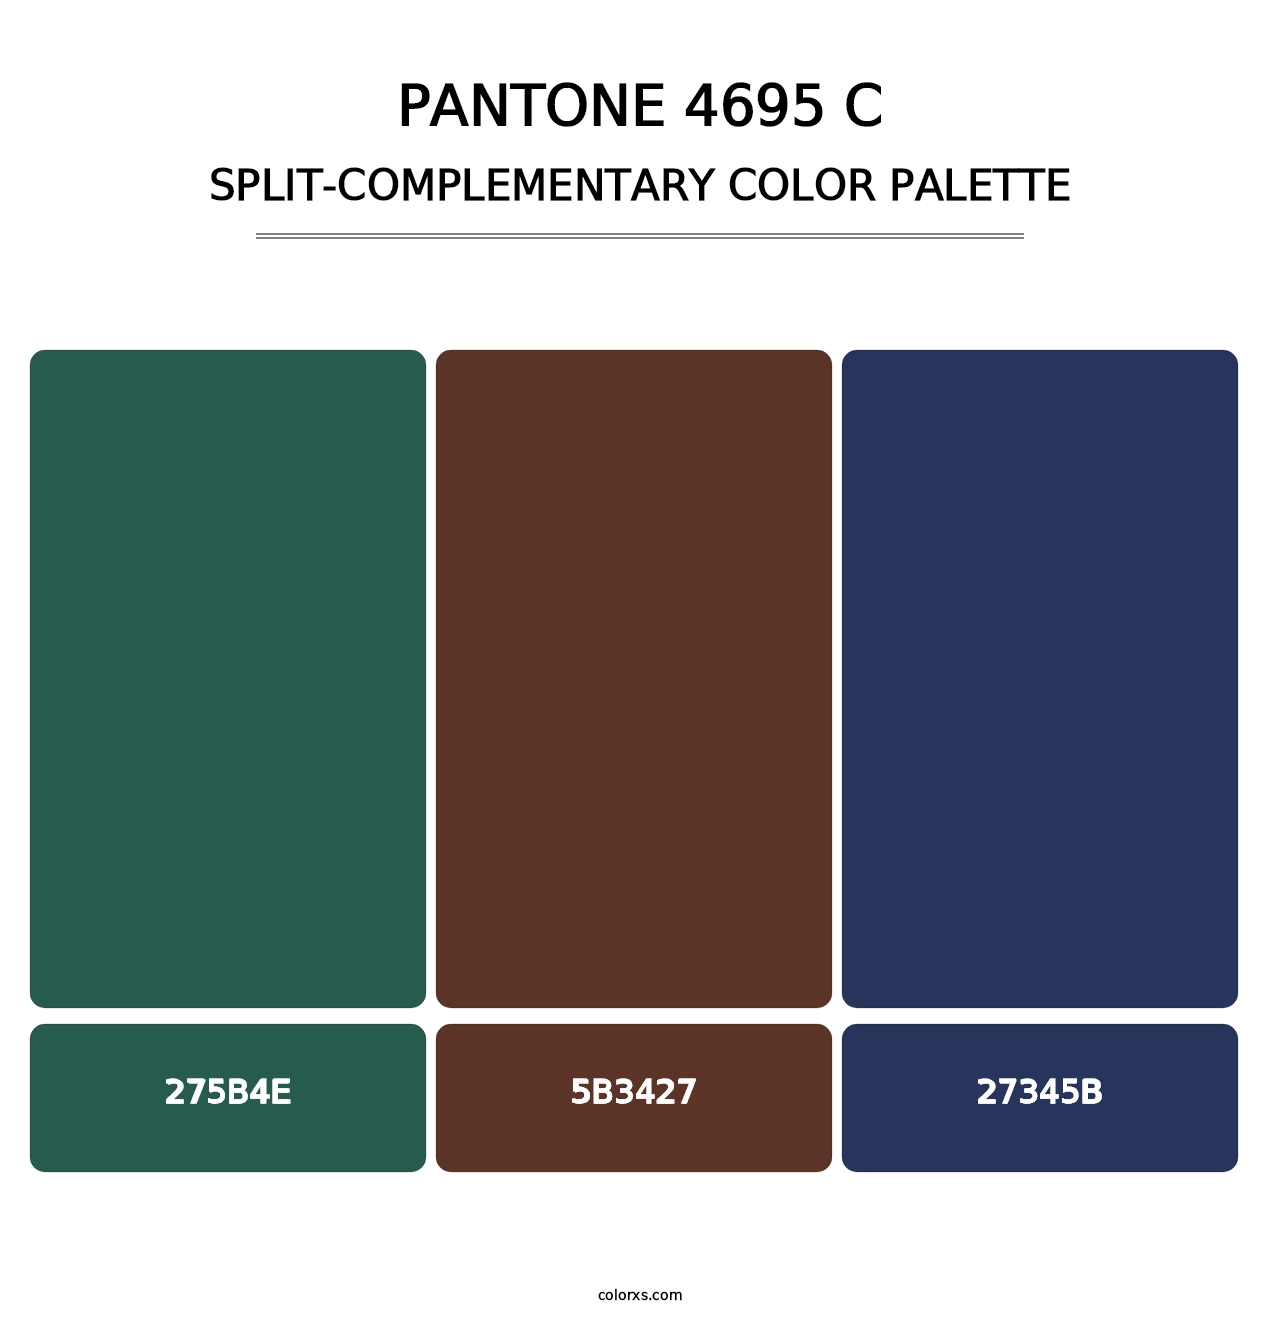 PANTONE 4695 C - Split-Complementary Color Palette